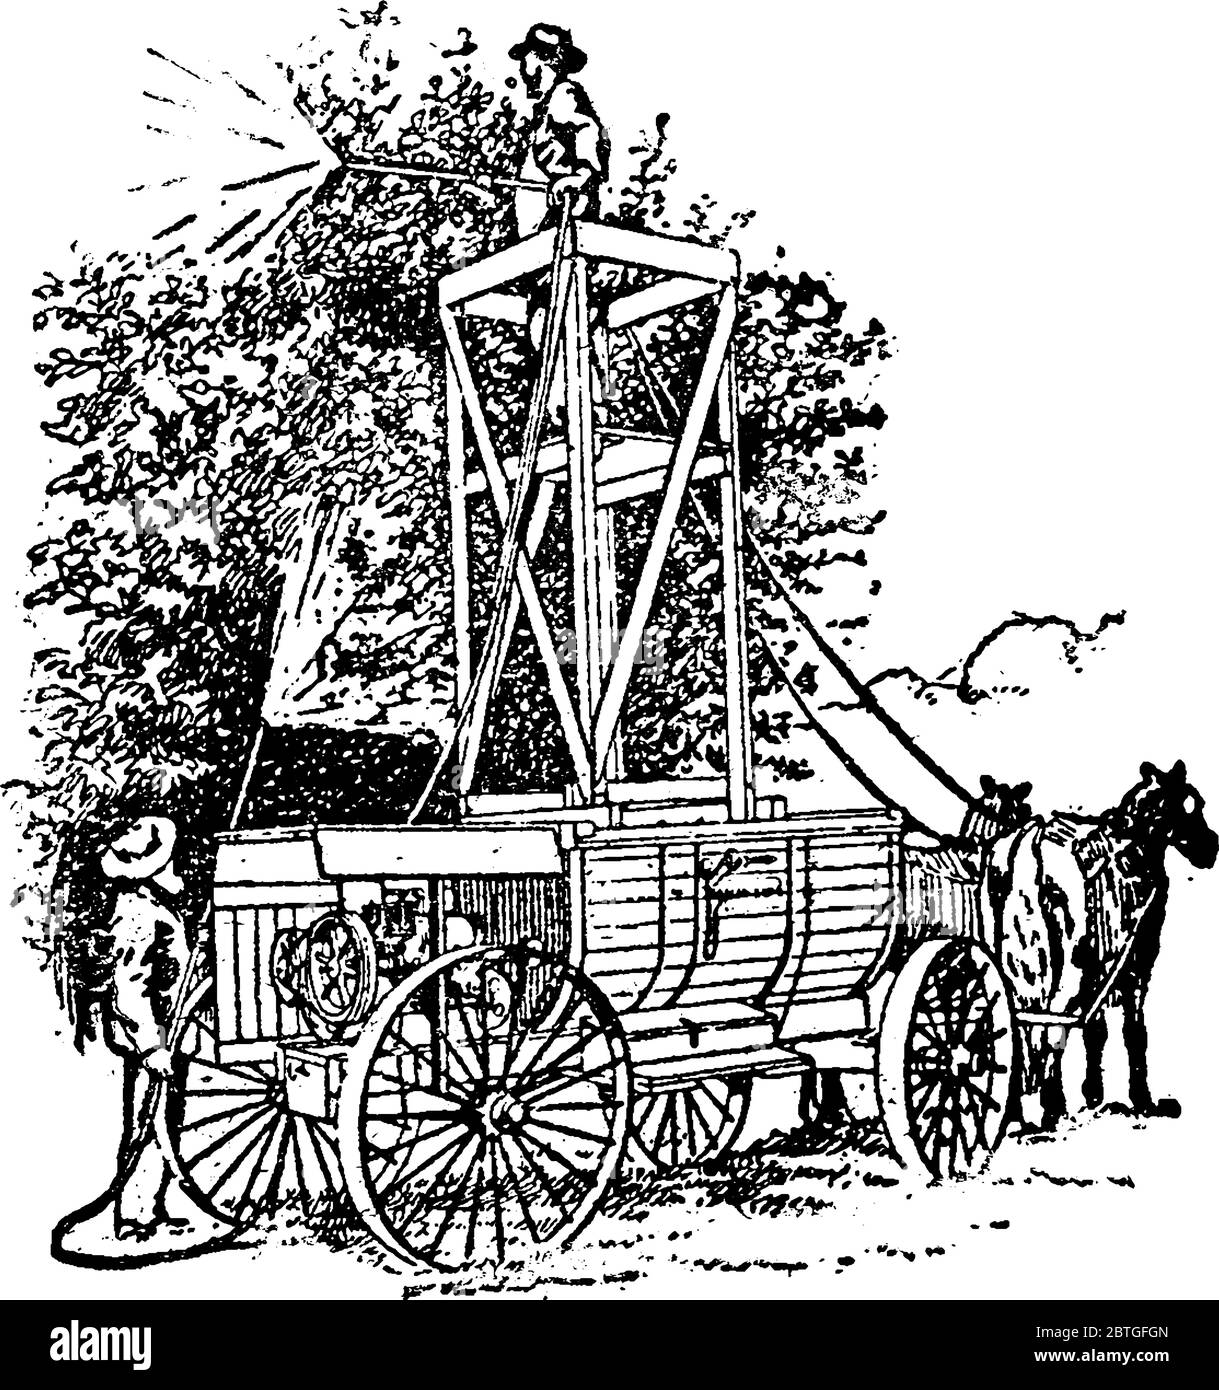 Pulvérisateur ayant un moteur lourd fixé sur une charrette à cheval utilisée pour pulvériser l'insecticide sur les arbres, dessin de ligne vintage ou illustration de gravure. Illustration de Vecteur